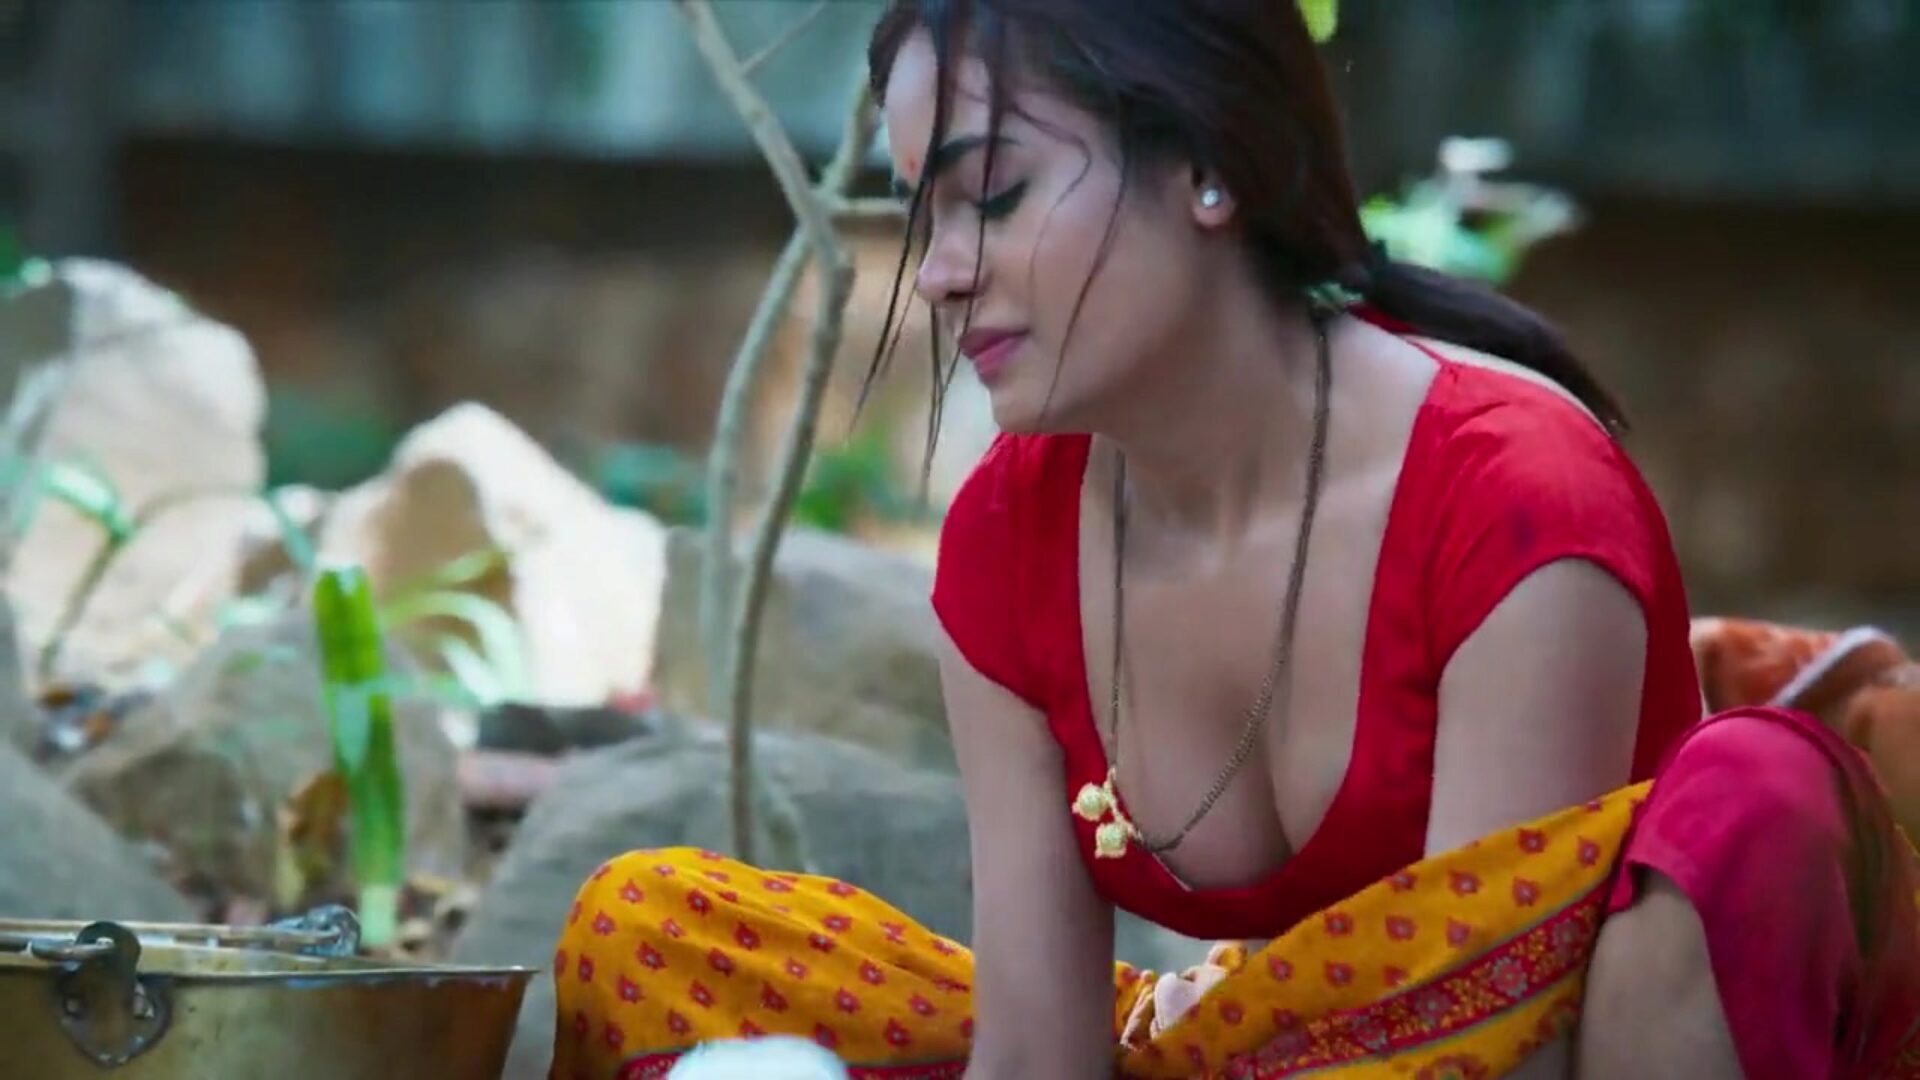 dhoban aur sarpanch наслаждается страстным сексом, индийская актриса sikha sinha в роли sonu dhoban делает пассиоанте хар банг-аут с сарпанчем. сикха рогоносец с ее муженек голу дхоби. sikha sinha отшпилили в различных позах для оргии, sonu dhoban ka joban mastram